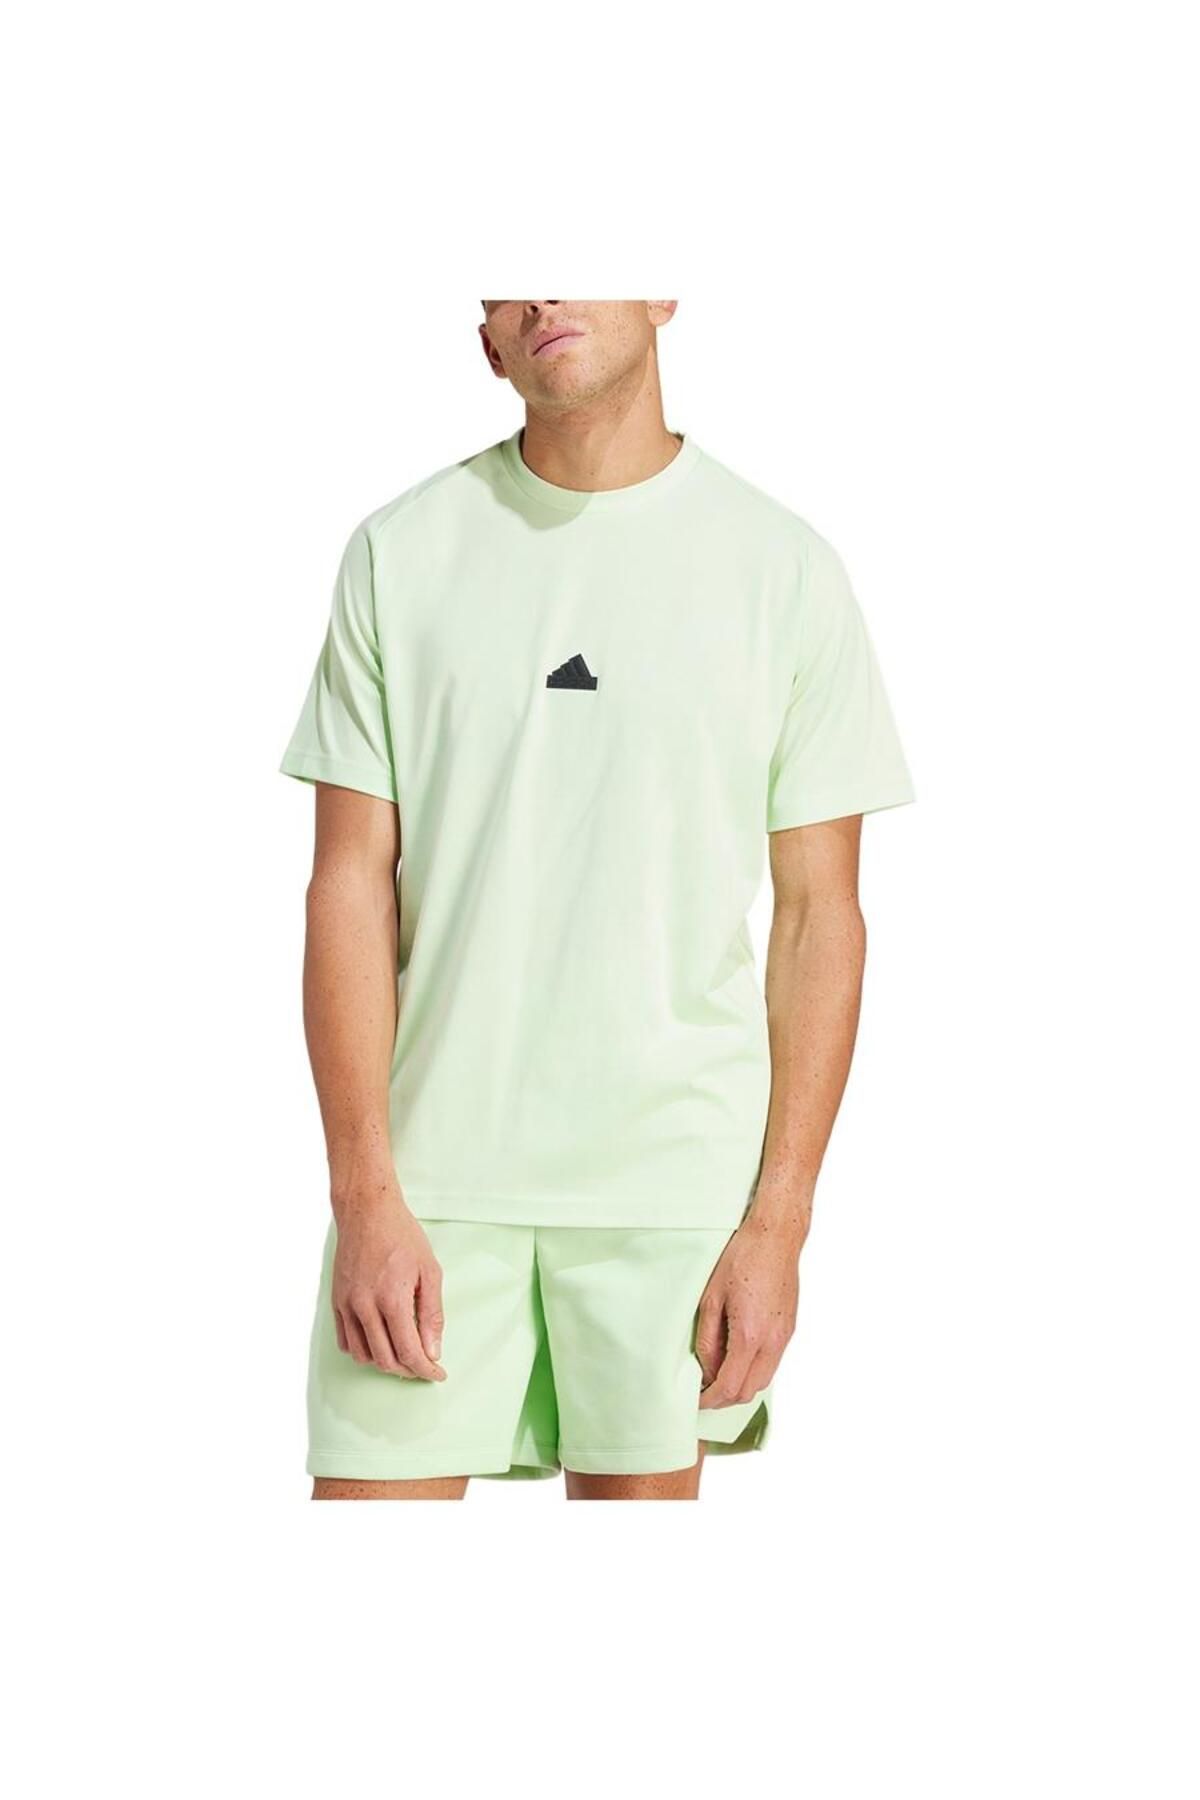 adidas T-Shirt - Multicolor - Regular fit - Trendyol